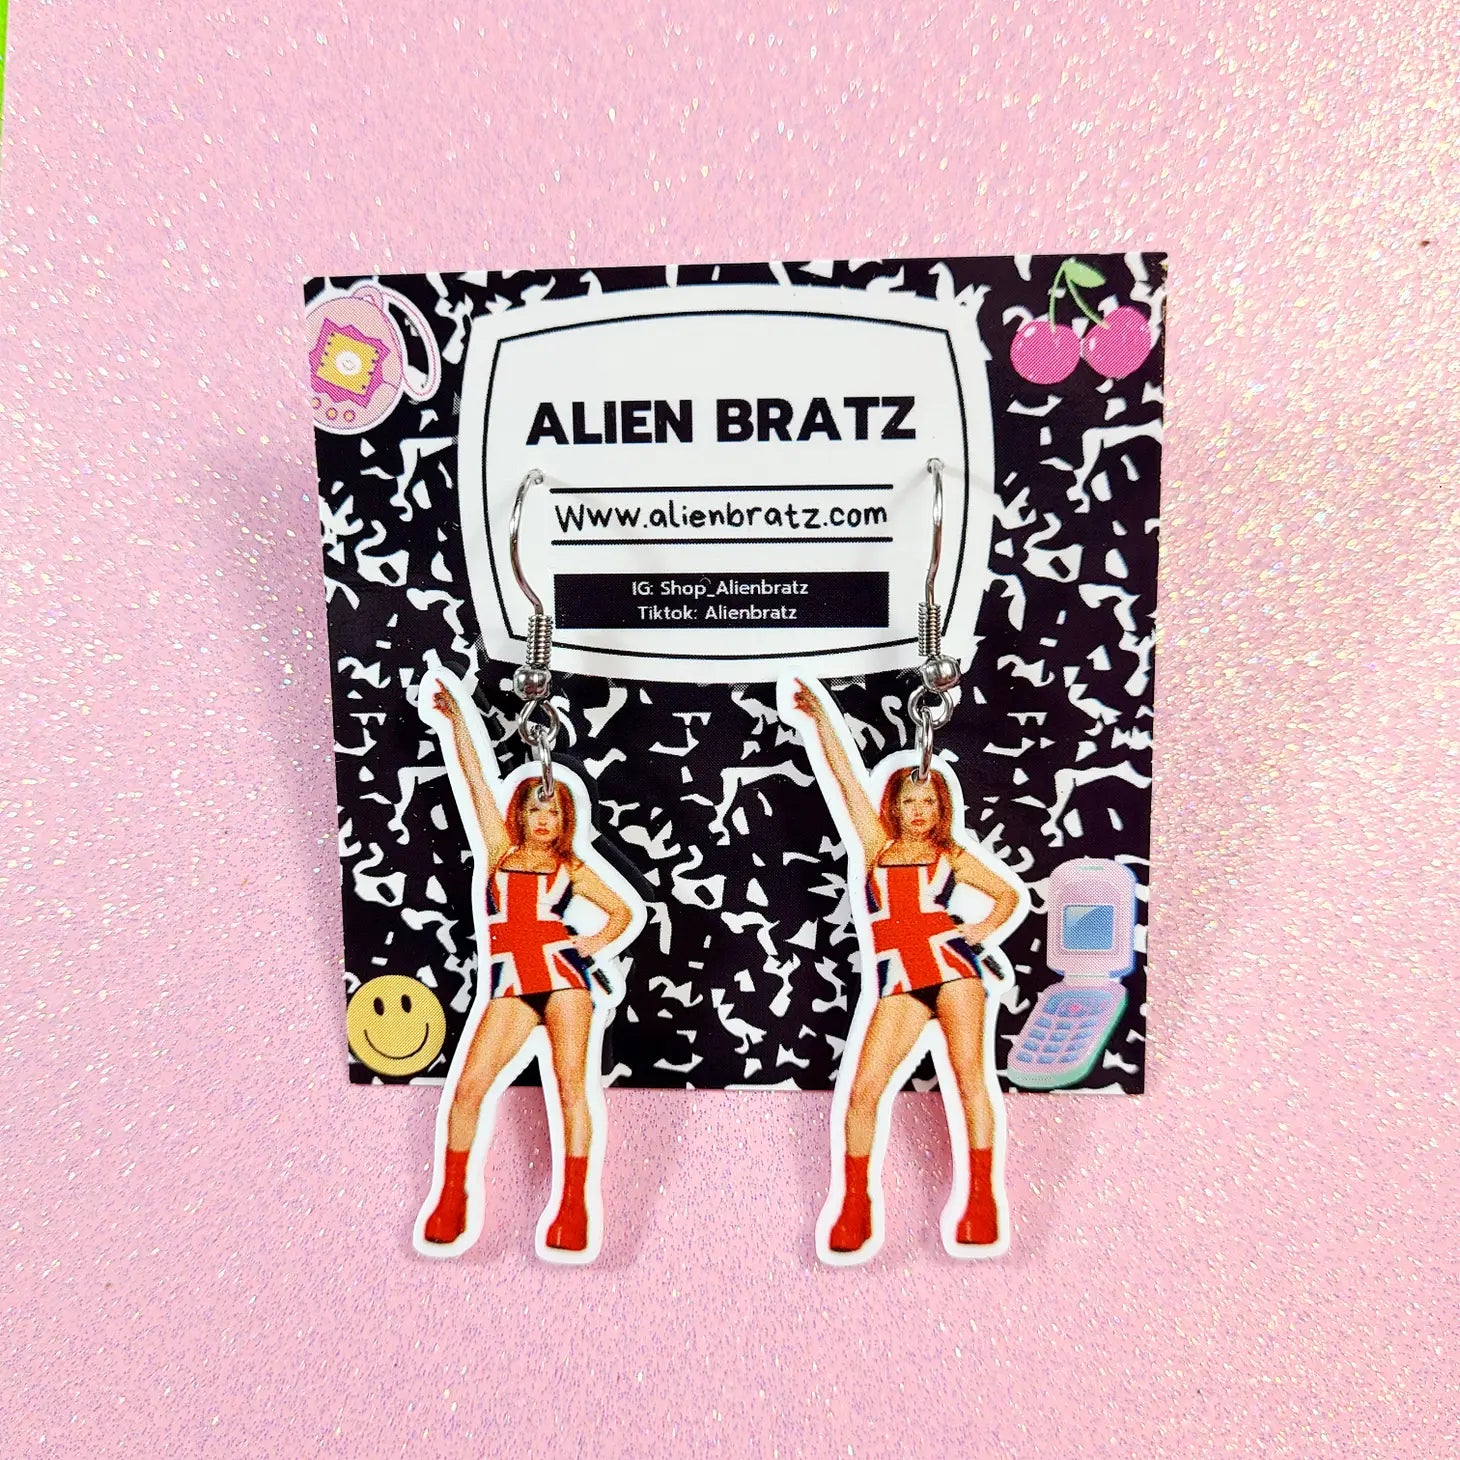 Alien Bratz Spice Girls Geri Halliwell Earrings